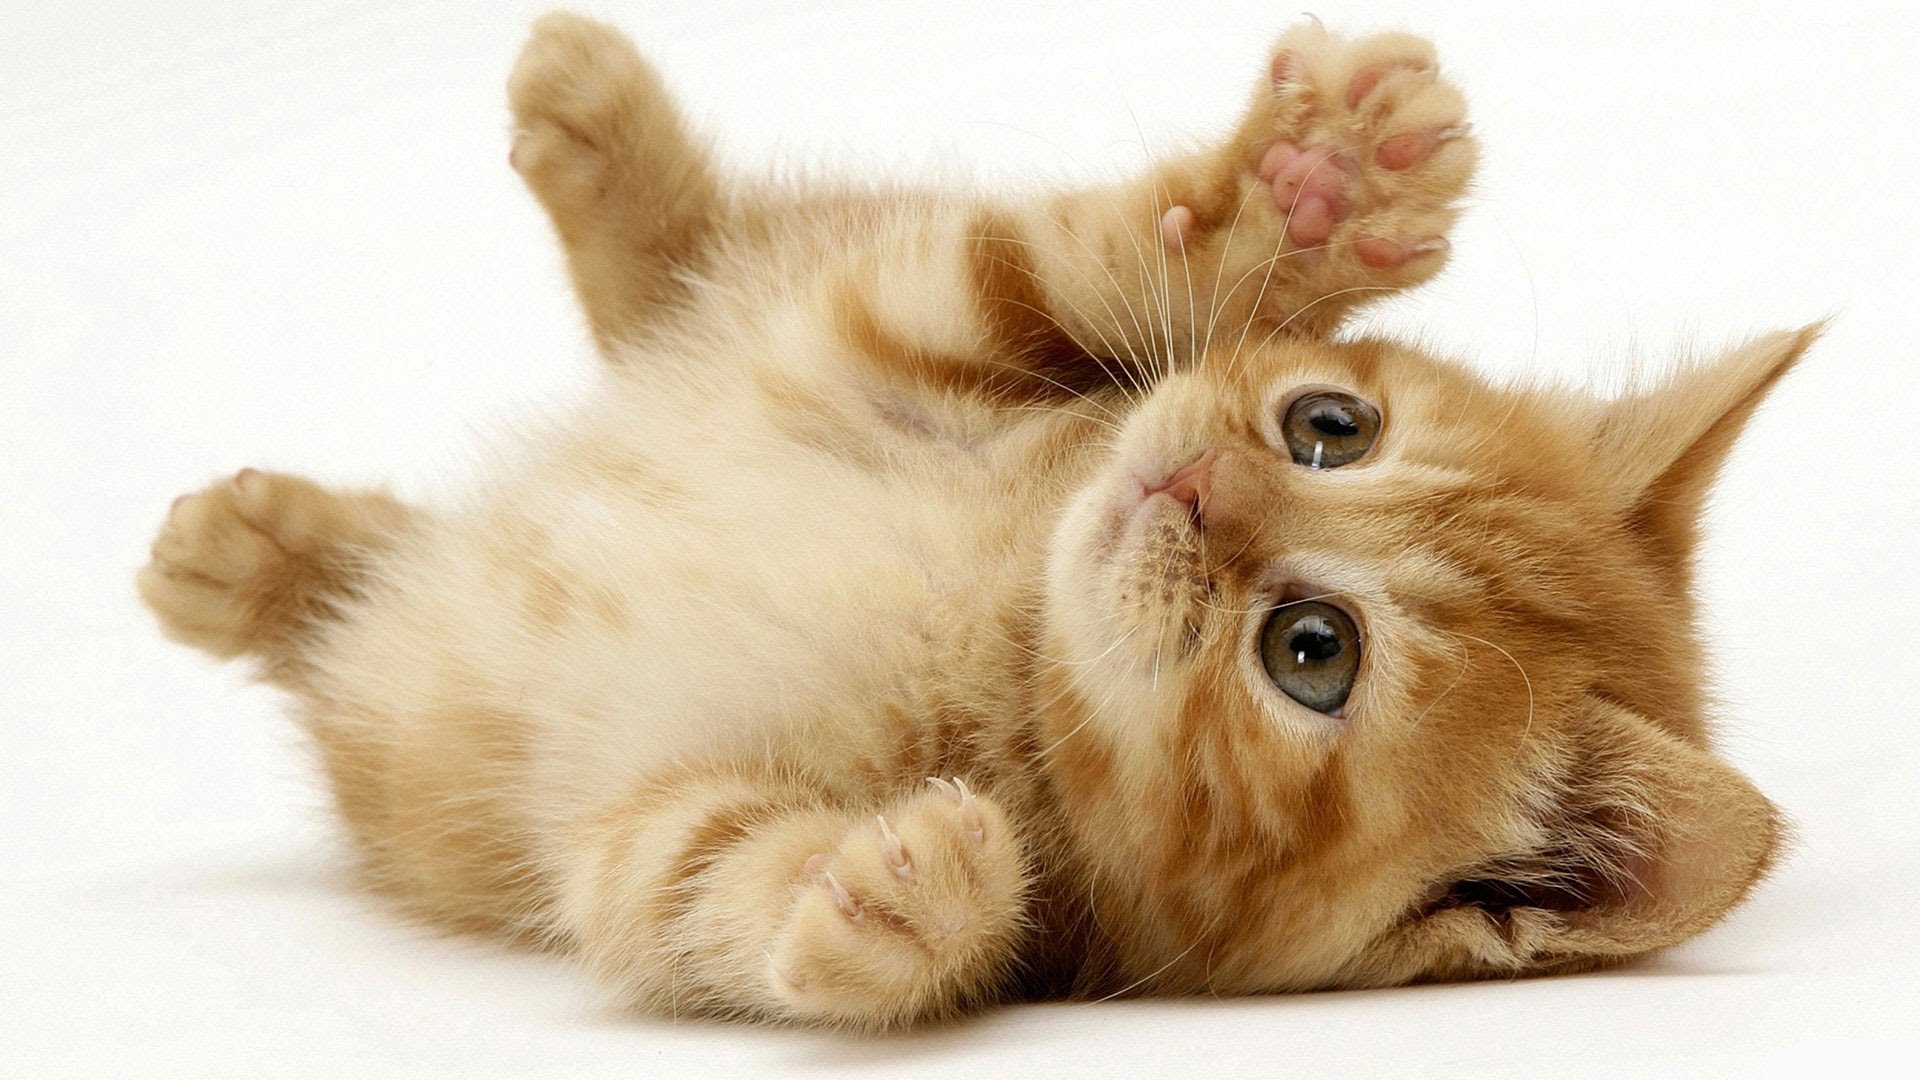 Cute kitten photo